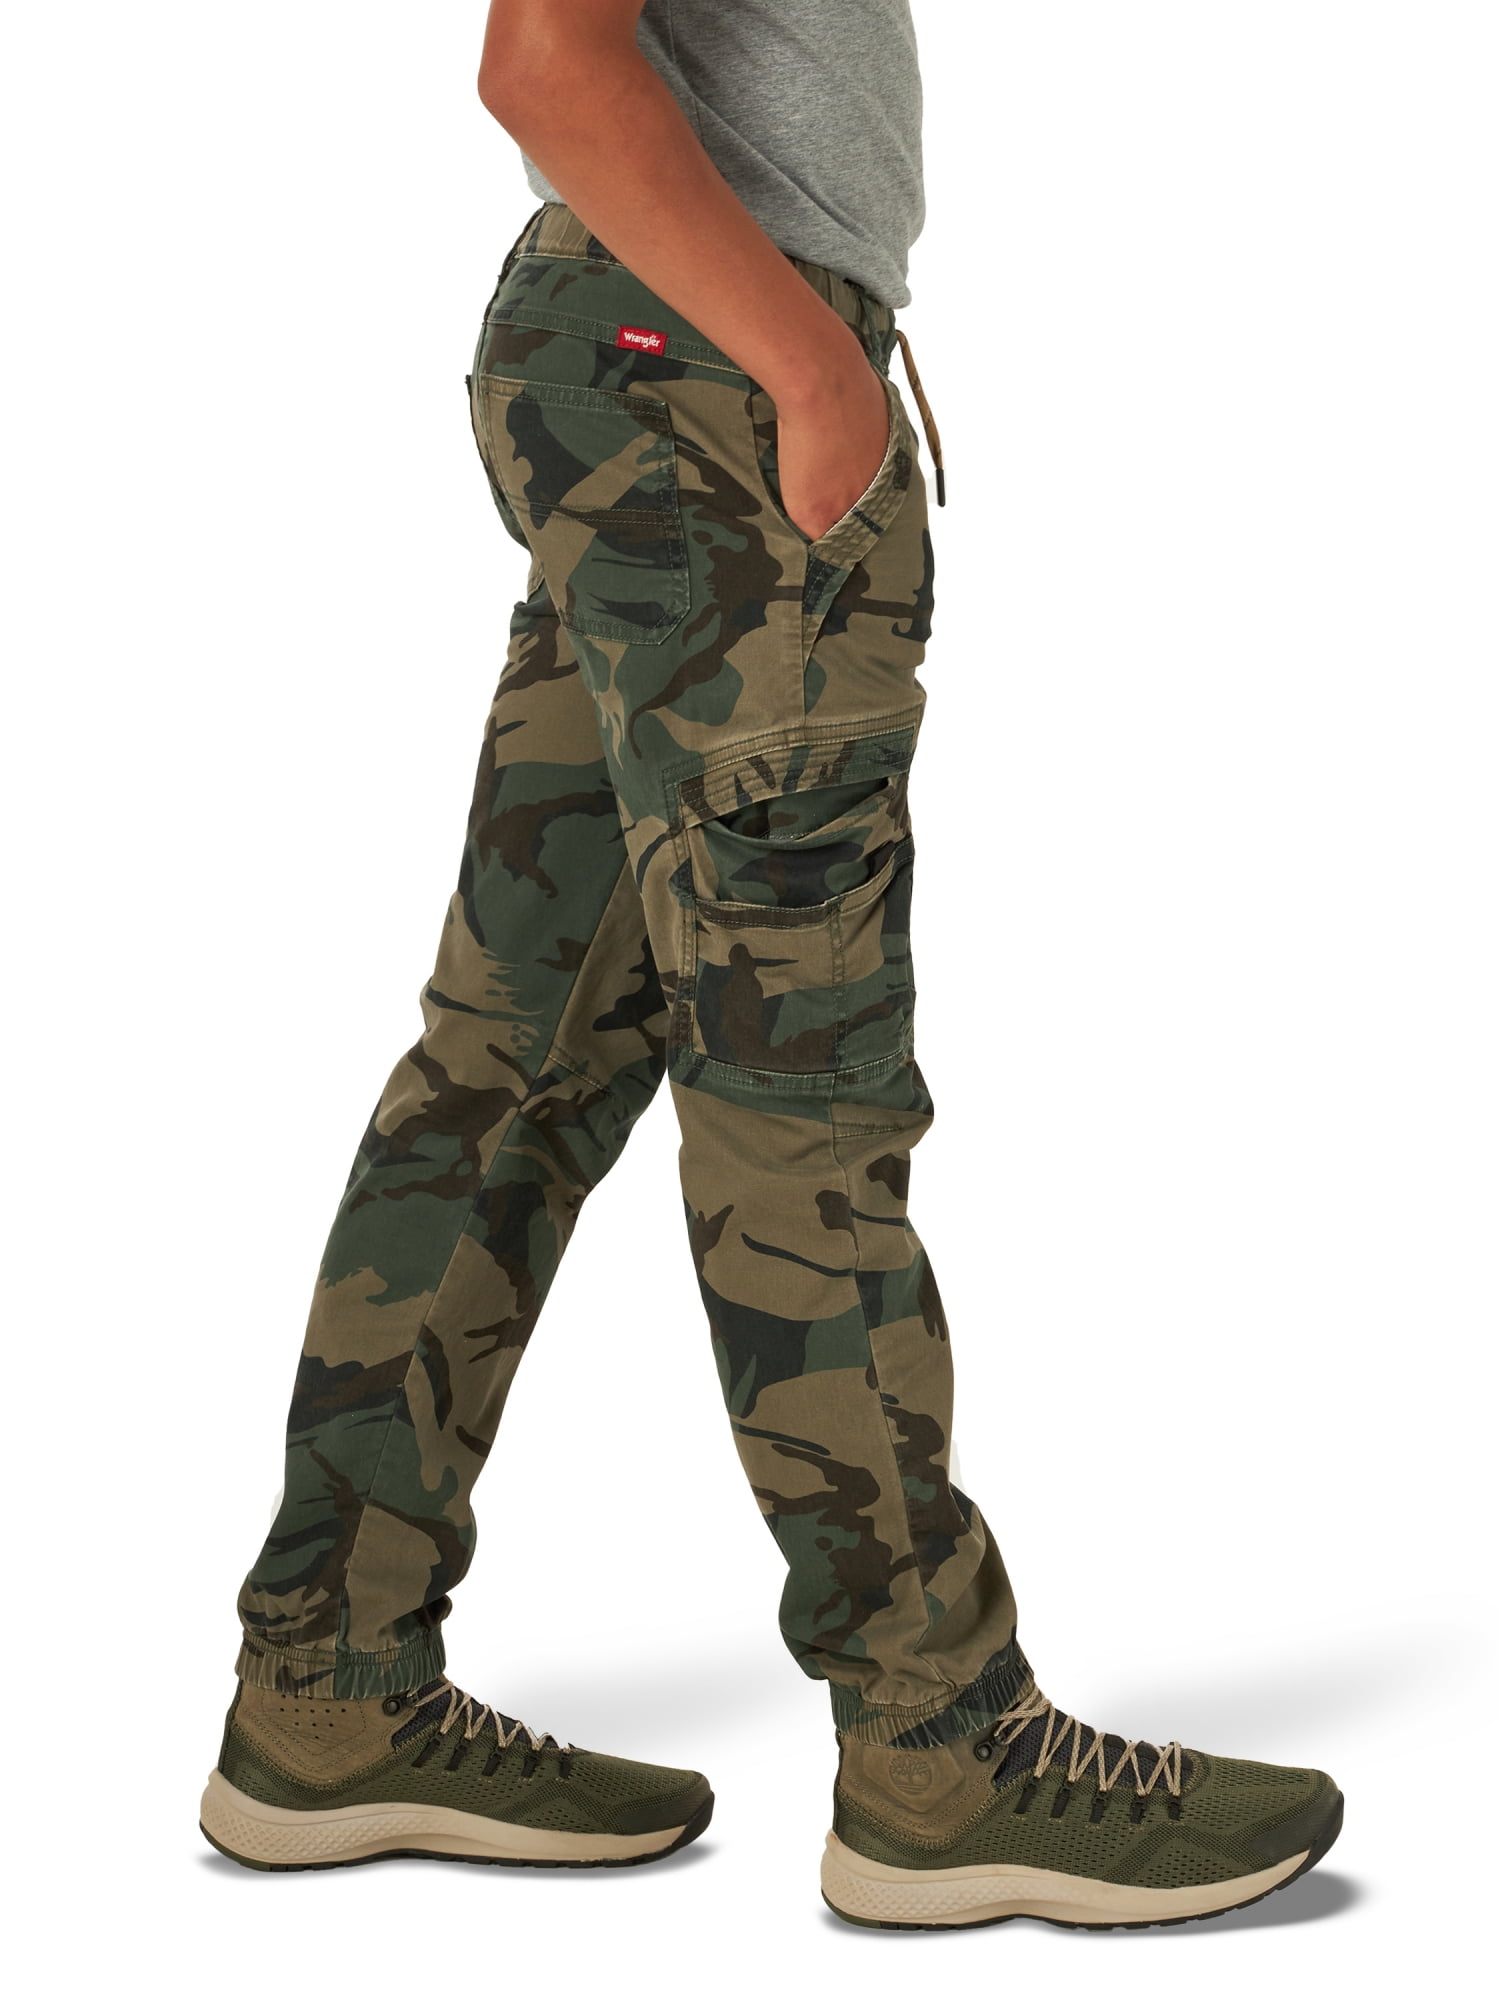 Wrangler Boy's Gamer Cargo Pants, Sizes 4-16, Slim & Husky 